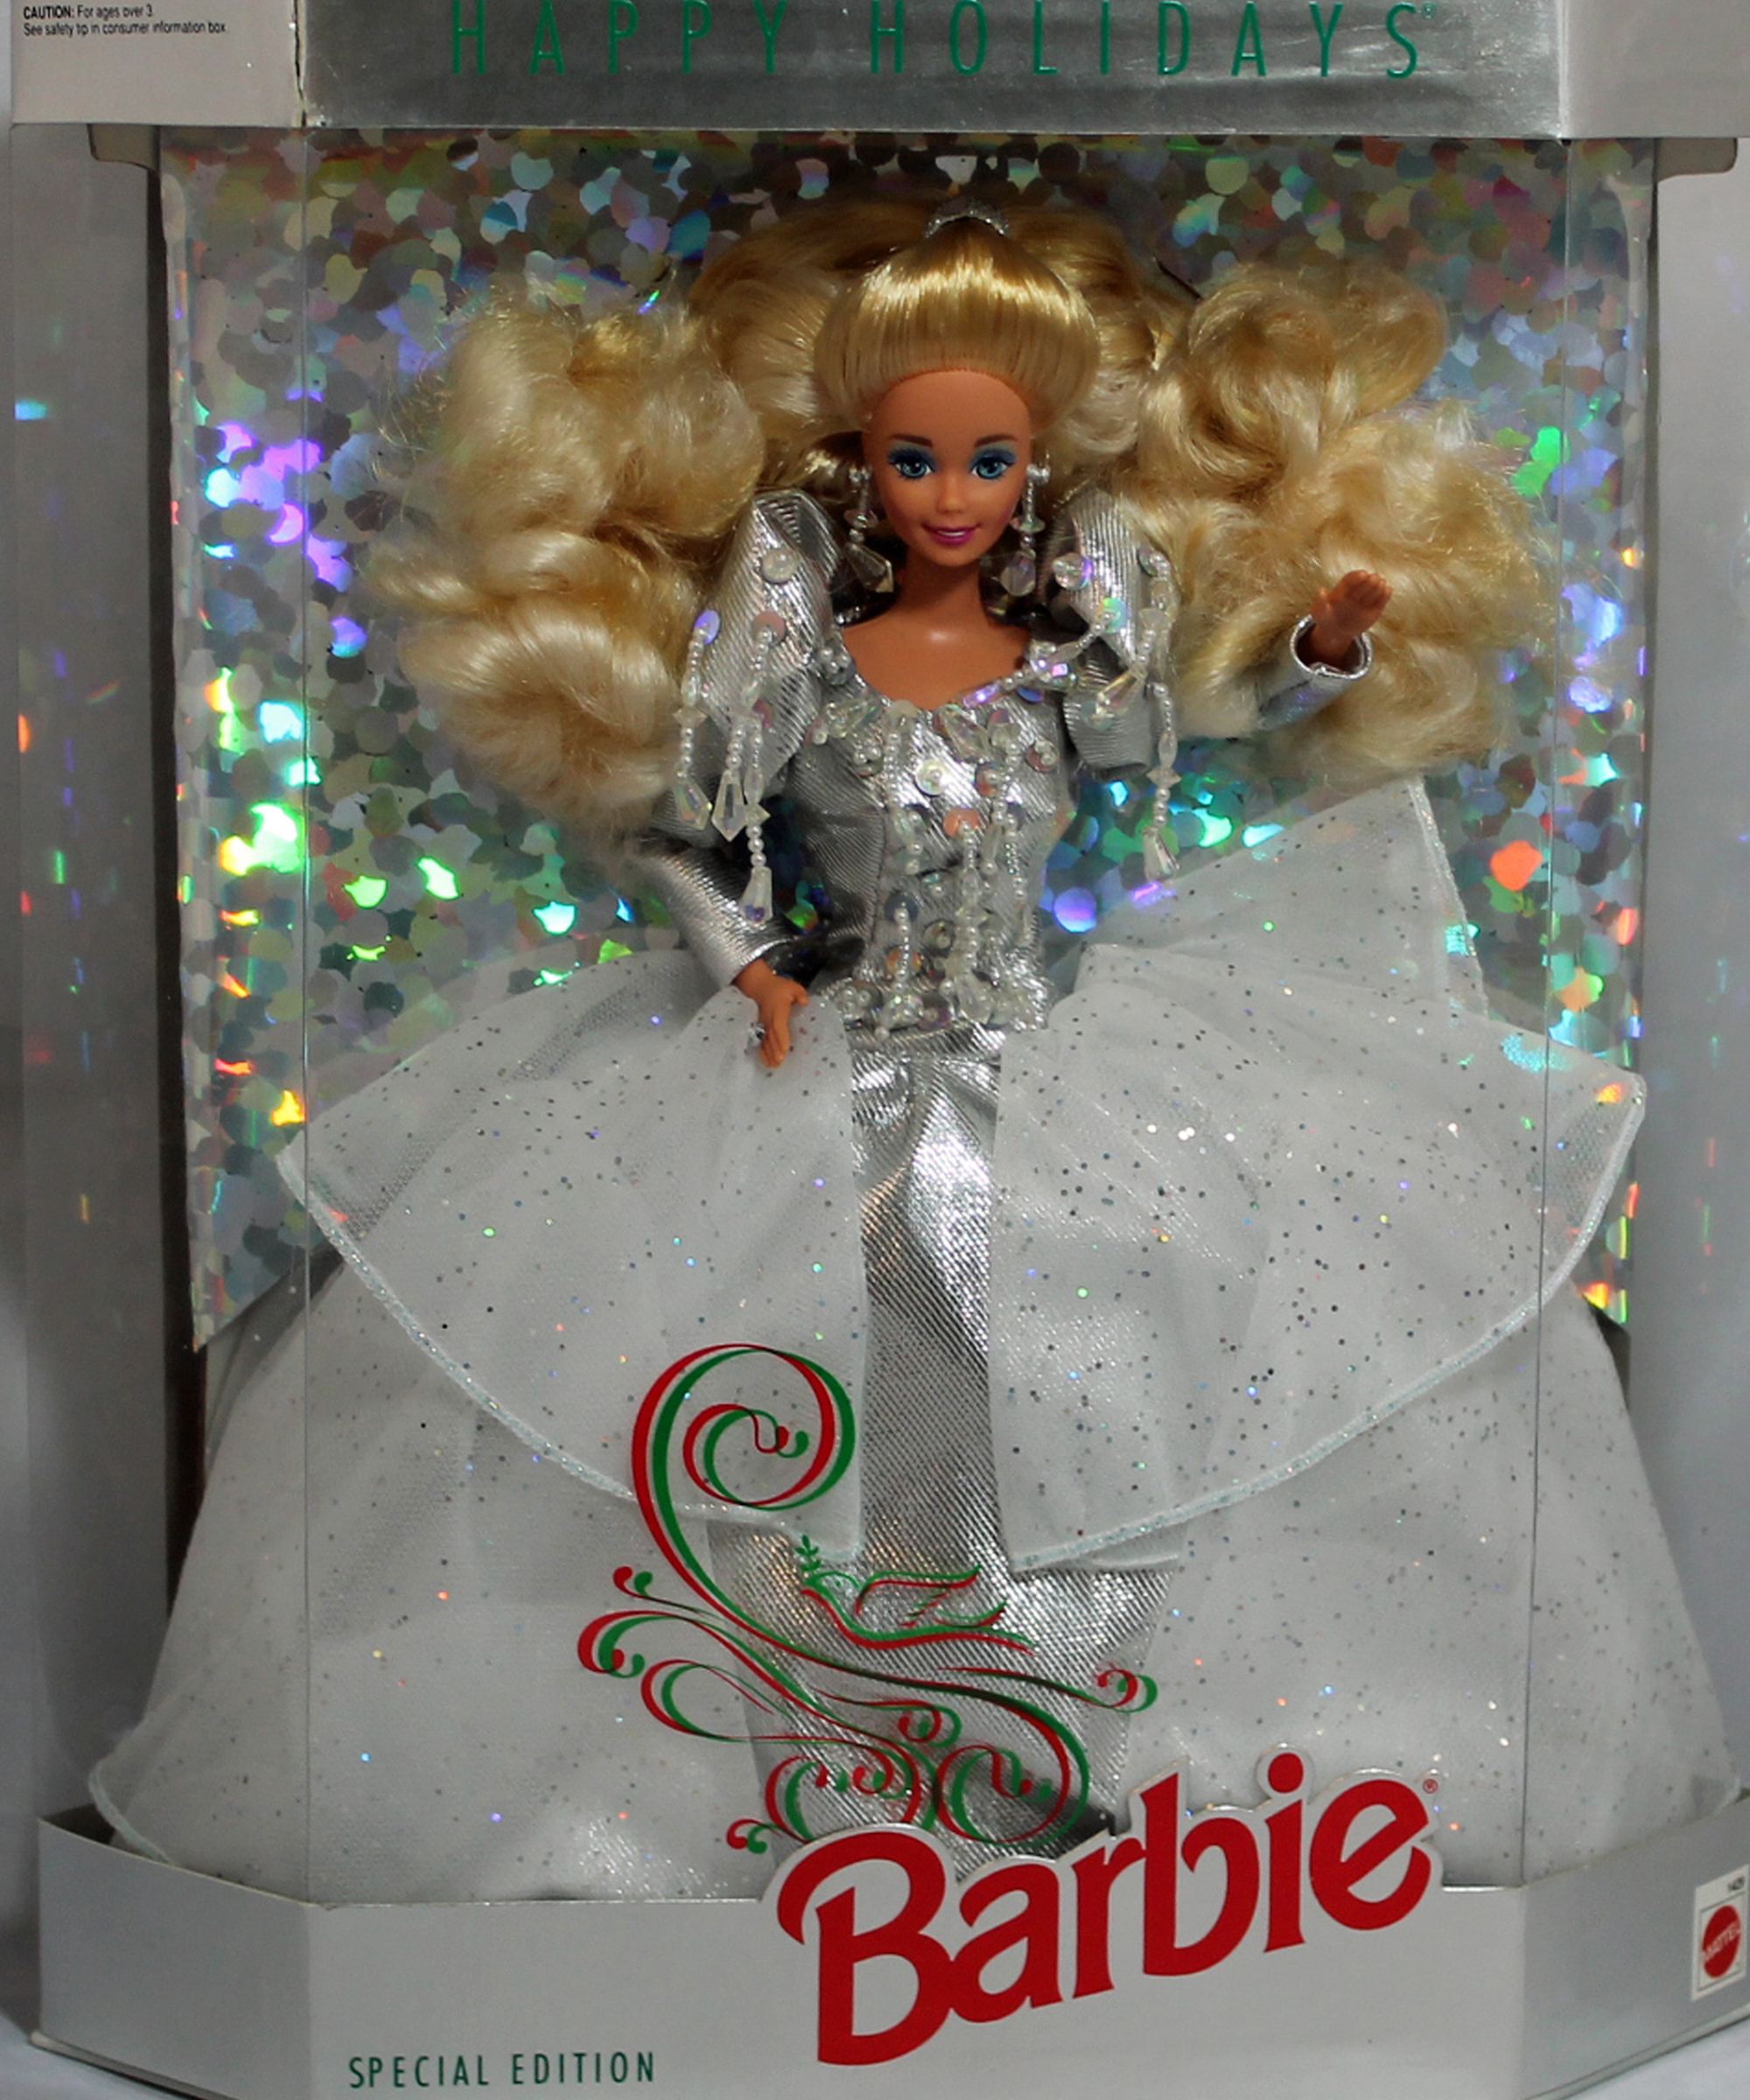 Happy Holiday Barbie 1992, Special Edition MIB NRFB - 01429 | eBay